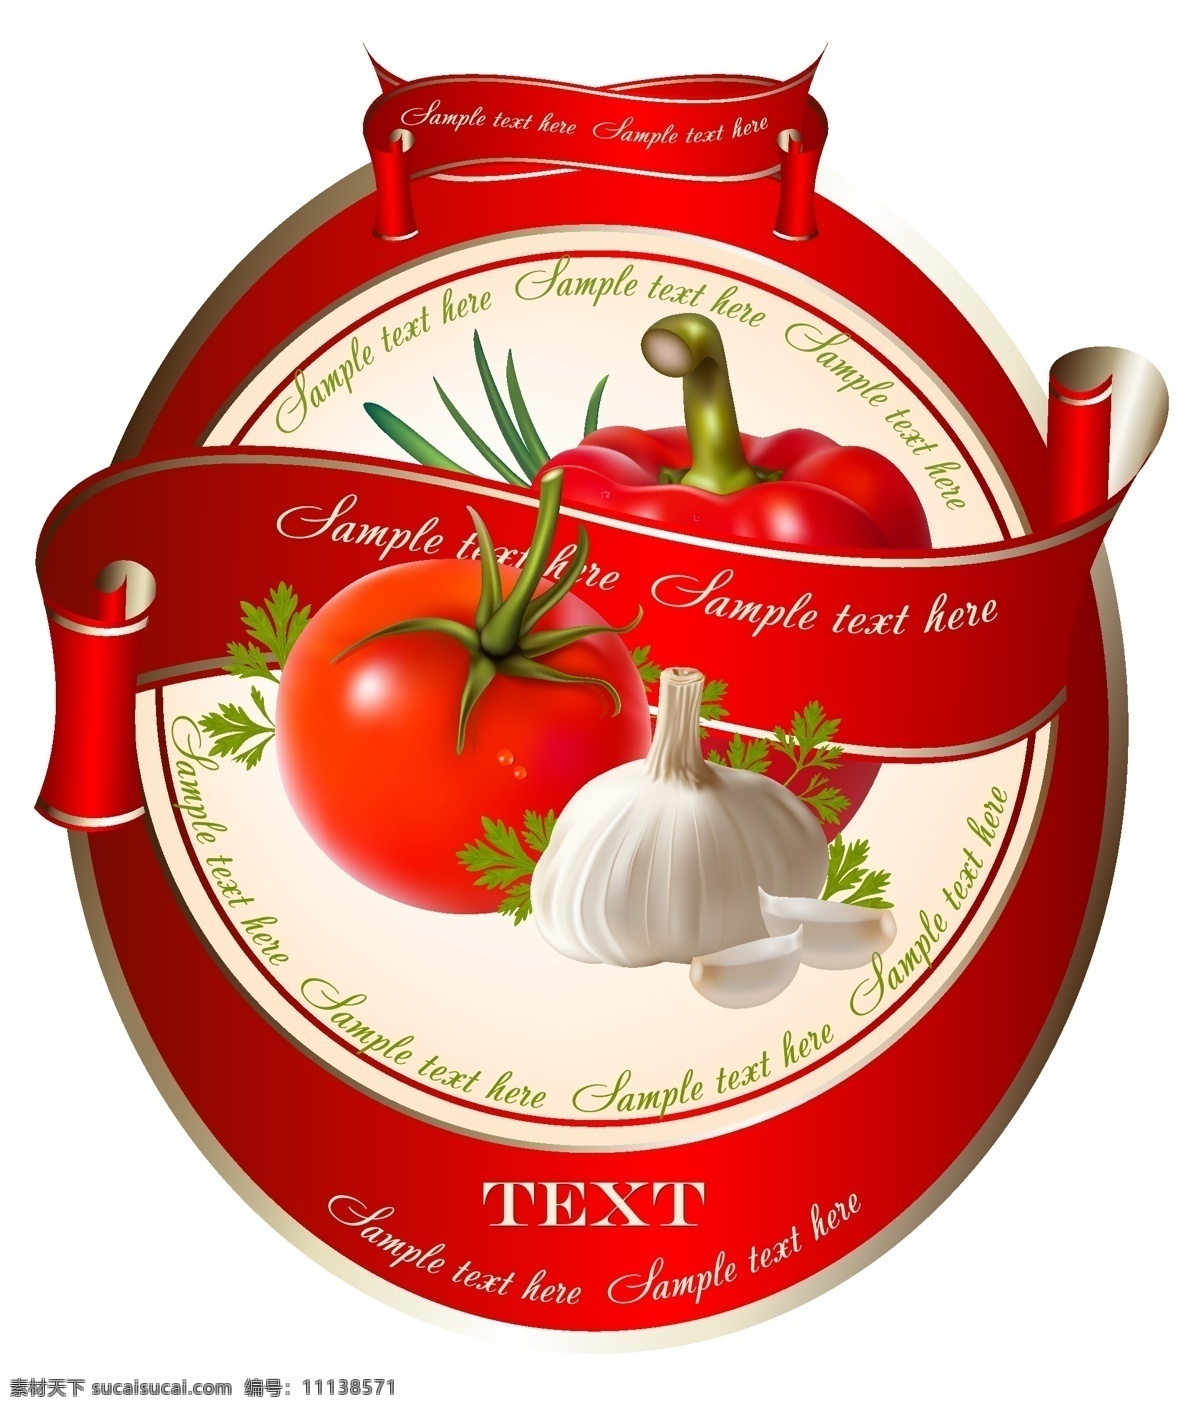 新鲜 果蔬 标签 贴 矢量 素材图片 标签贴 大蒜 红色 青椒 生物世界 蔬菜 水果 西红柿 淘宝素材 淘宝促销标签